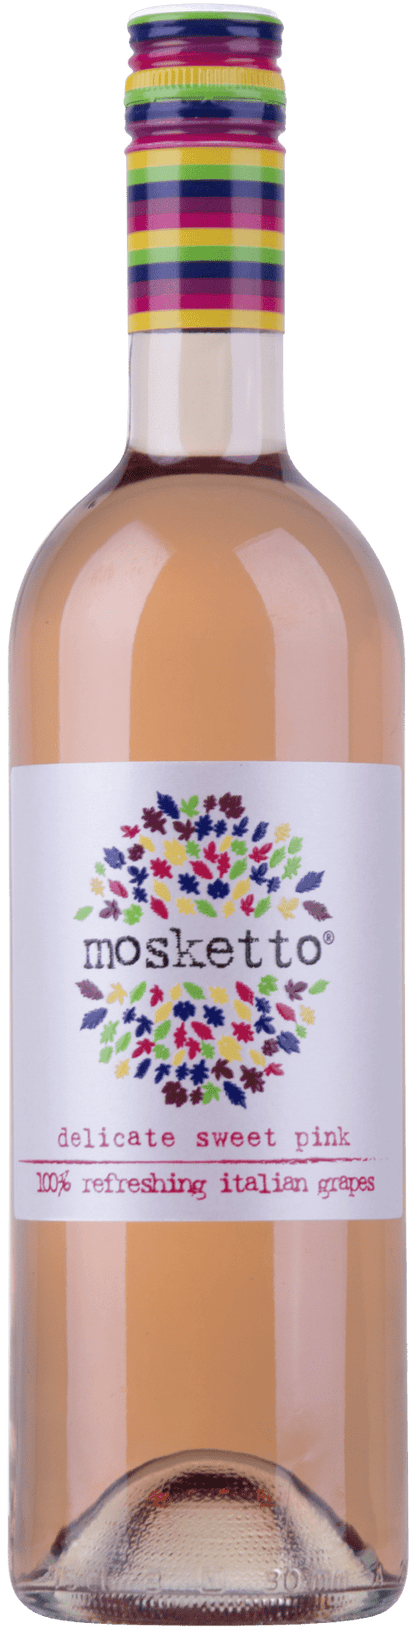 Mosketto delicato sweet red, Piemenont, Italien - StillWine GmbH